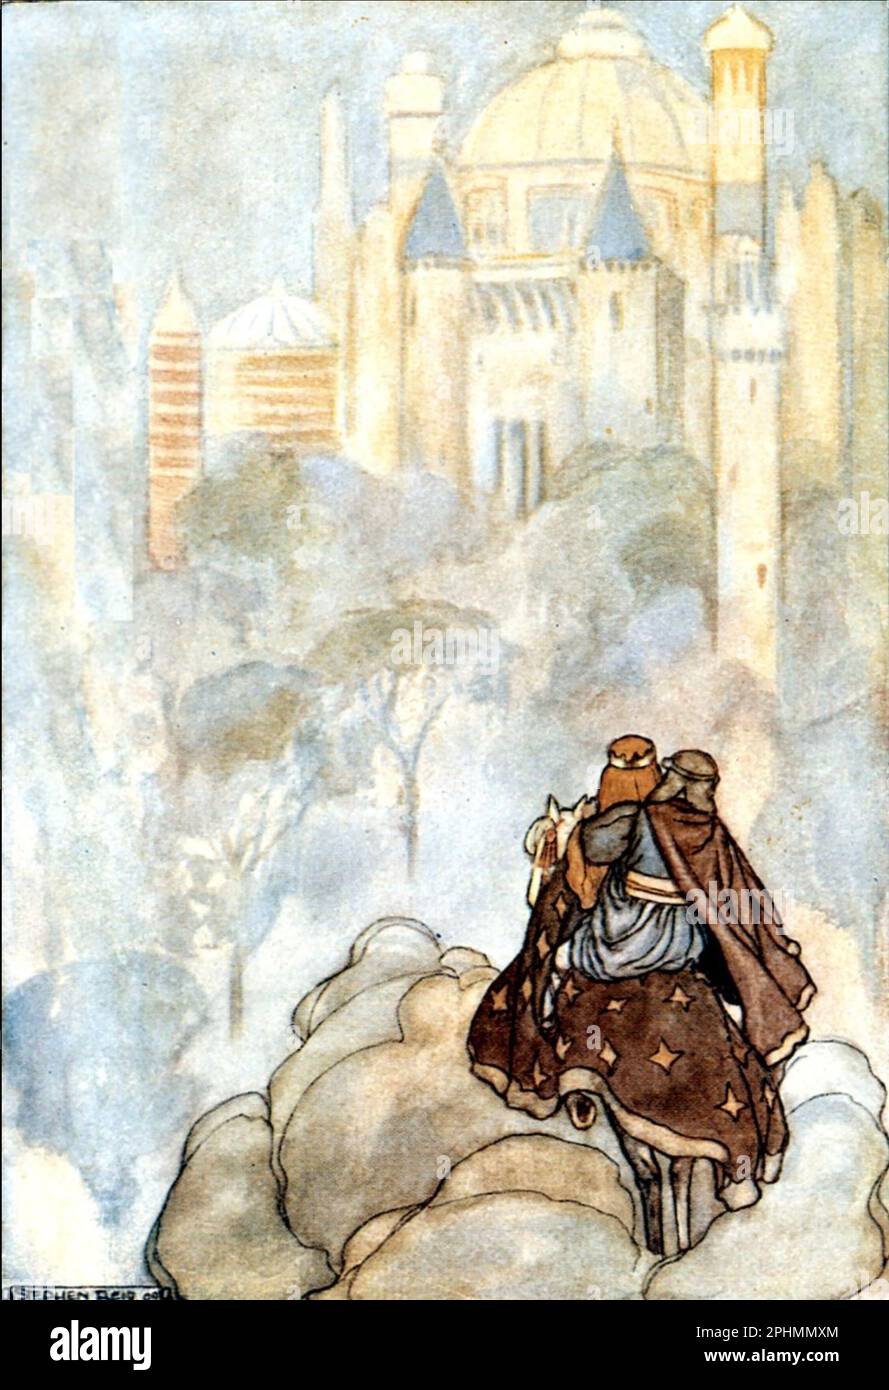 Tír na nóg - pays de la jeunesse - un mythe celtique dans une illustration de l'artiste écossais Stephen Reid d'un livre de 1910 montrant Oisin et Niamh approchant le pays de la jeunesse. Banque D'Images